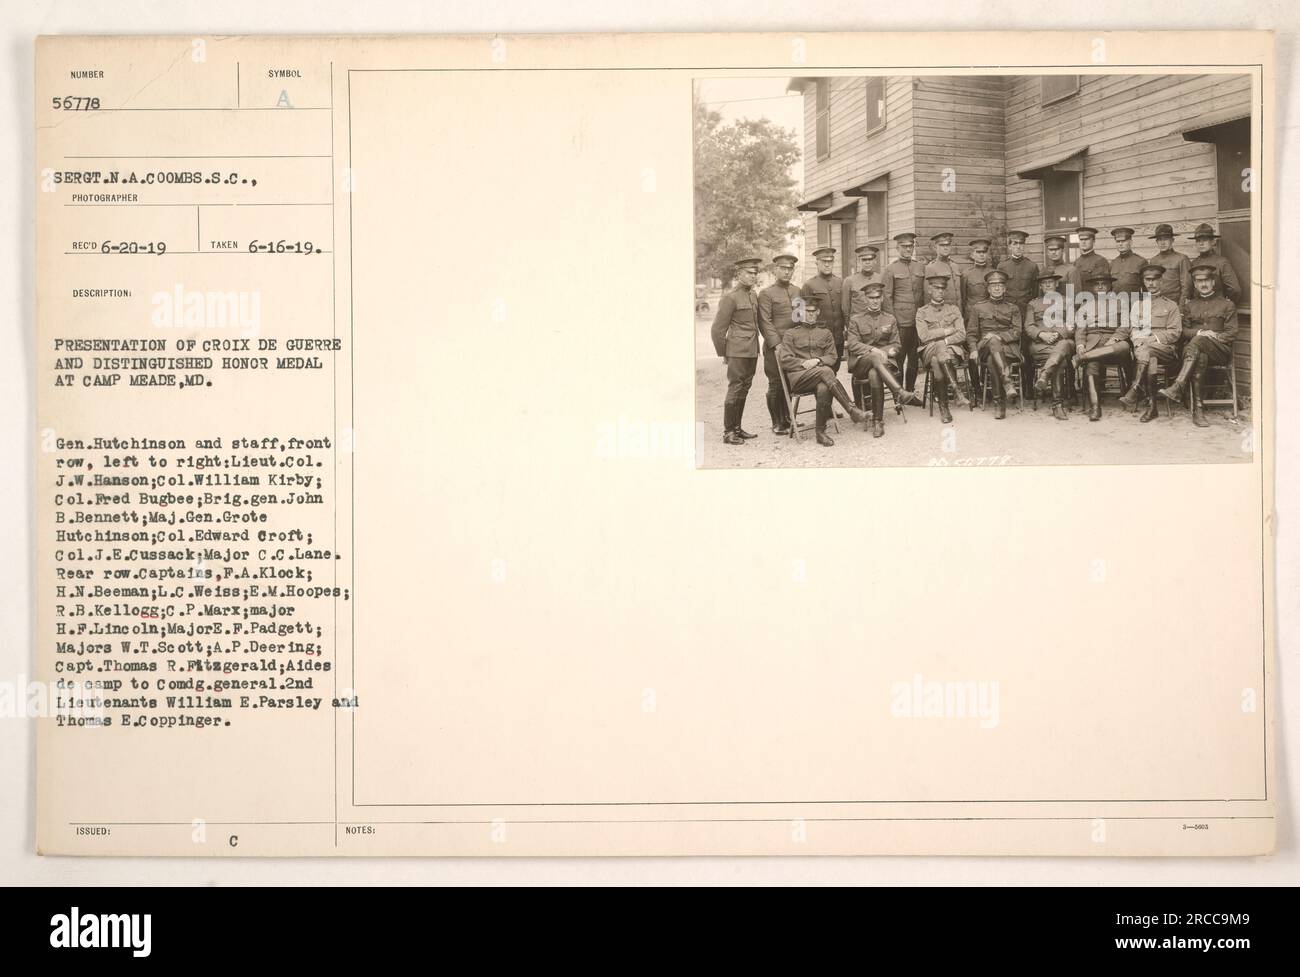 Bildunterschrift: "Präsentation von Croix de Guerre und der Ehrenmedaille im Camp Meade, Maryland. General Hutchinson und seine Mitarbeiter, darunter verschiedene hochrangige Offiziere und Helfer des Lagers, werden gesehen, wie sie die Medaillen auf diesem Foto vom 16. Juni 1919 erhalten haben. Die Soldaten sind als Ser aufgeführt. Sergeant N.A. Coombs und 21 weitere Offiziere. [QUELLE: SERGT.N.A.COOMBS.S.C., FOTOGRAF].“ Stockfoto